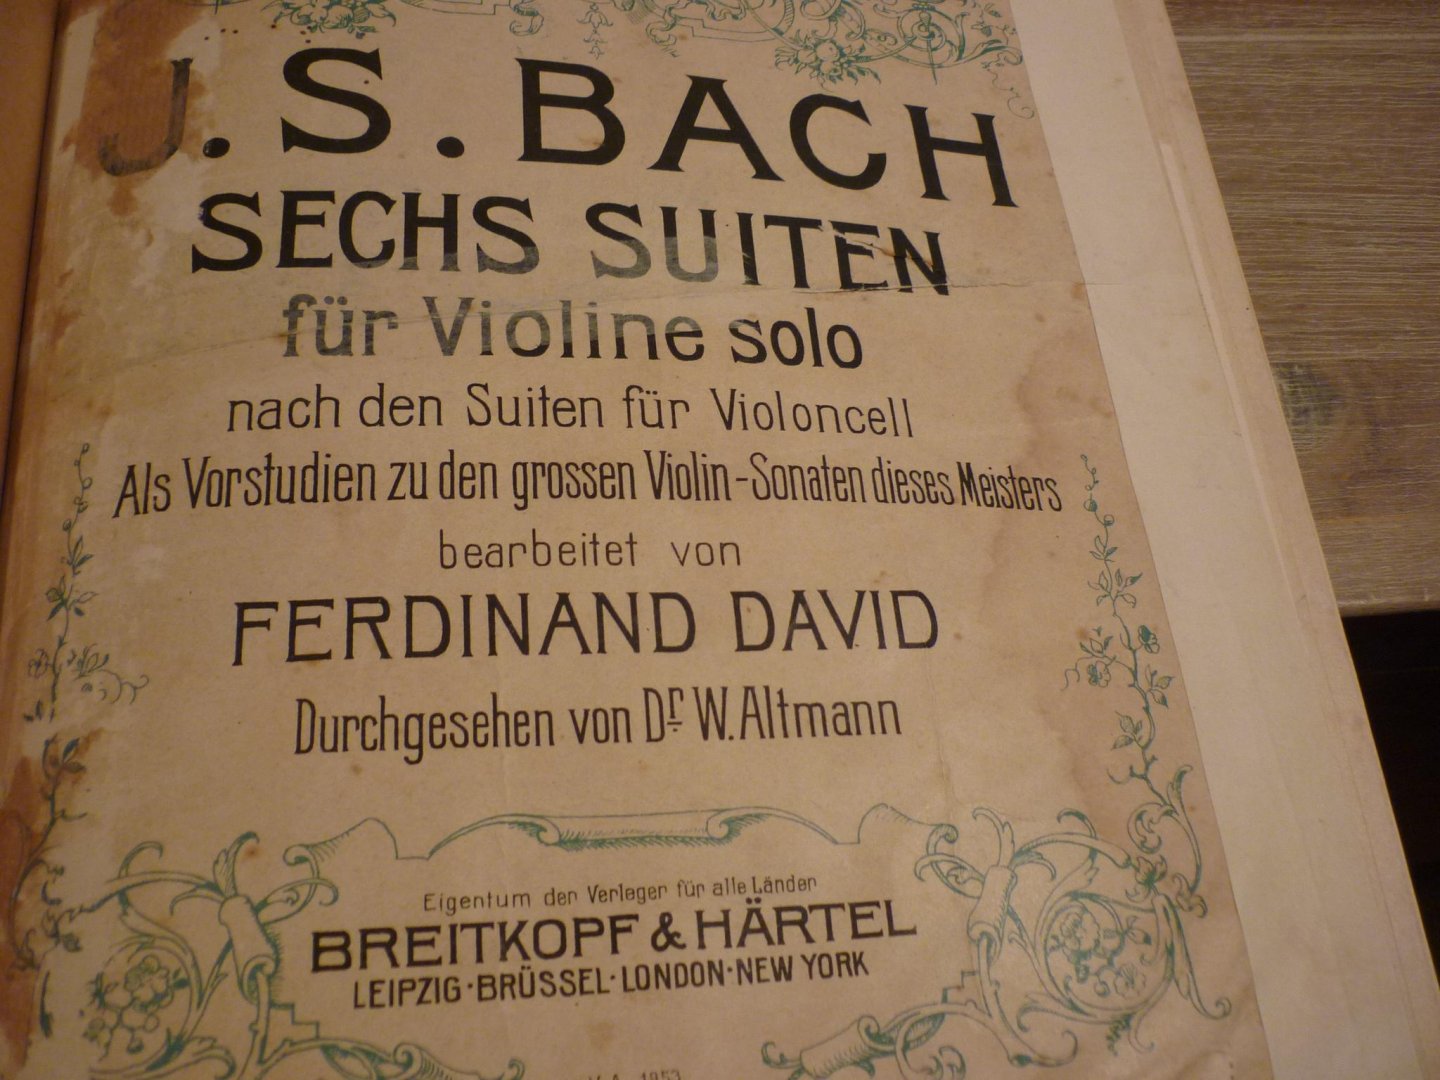 Bach; J. S. (1685-1750) - Sechs Suiten fur Violine solo; nach den suiten fur Violoncell (Als Vorstudien zu den grossen Violin-Sonaten dieses Meisters, bearbeitet von Fred. David. (Dr. W. Altmann)